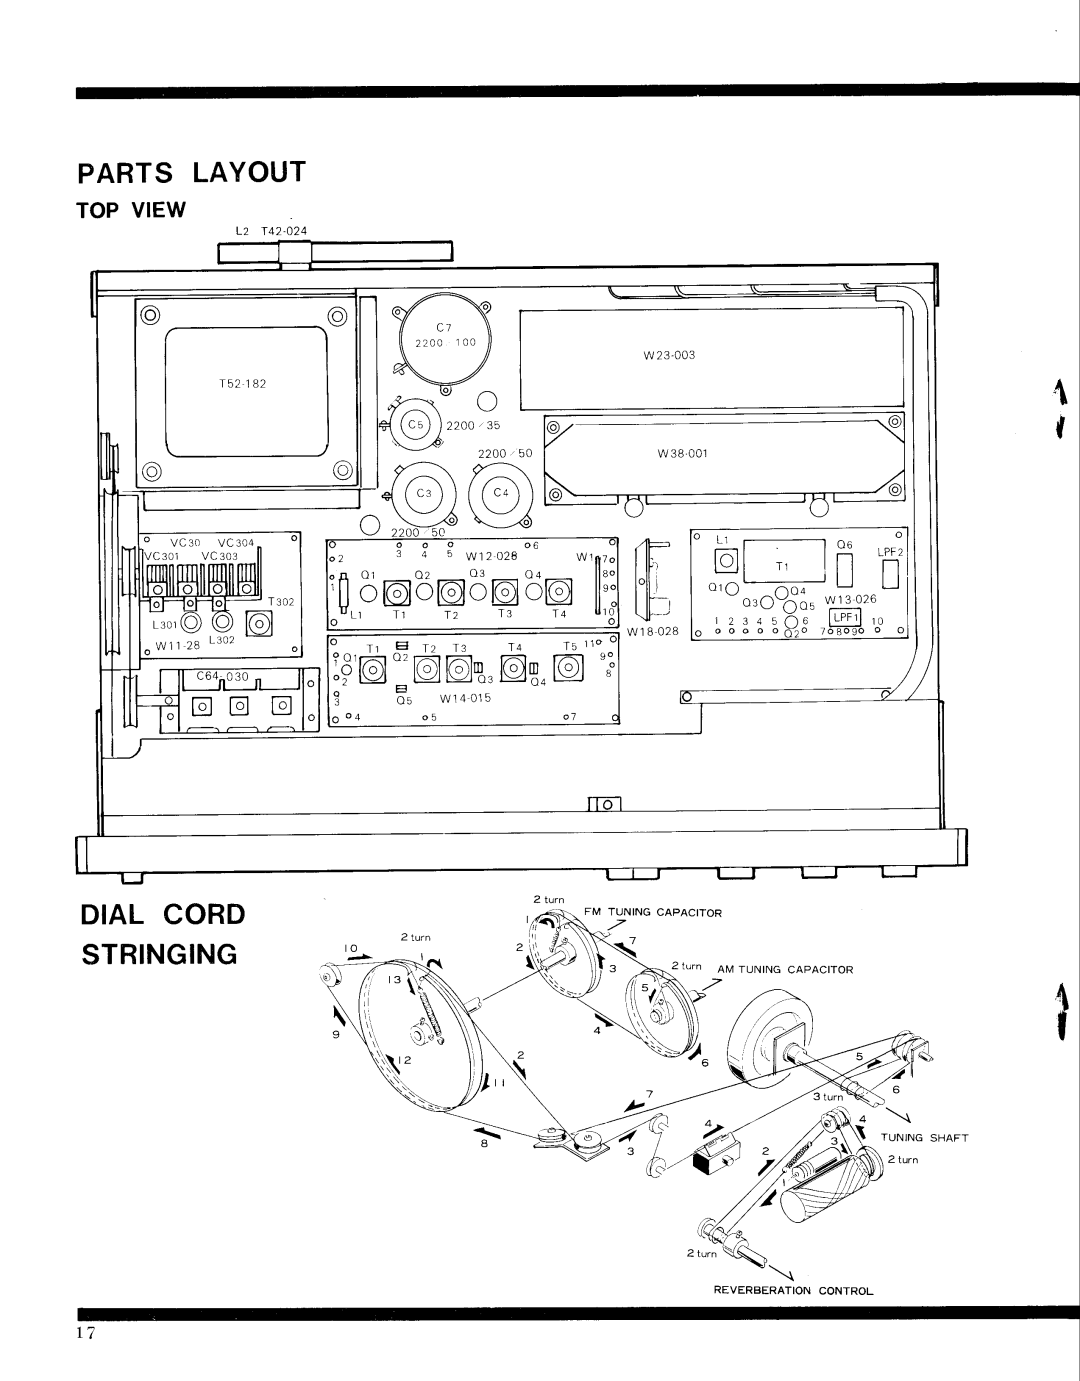 Pioneer SX-9000 service manual lfl,qb@5p59il, pO:O6,o,@8.6, Parts Lavout, Dial Cord Stringing 